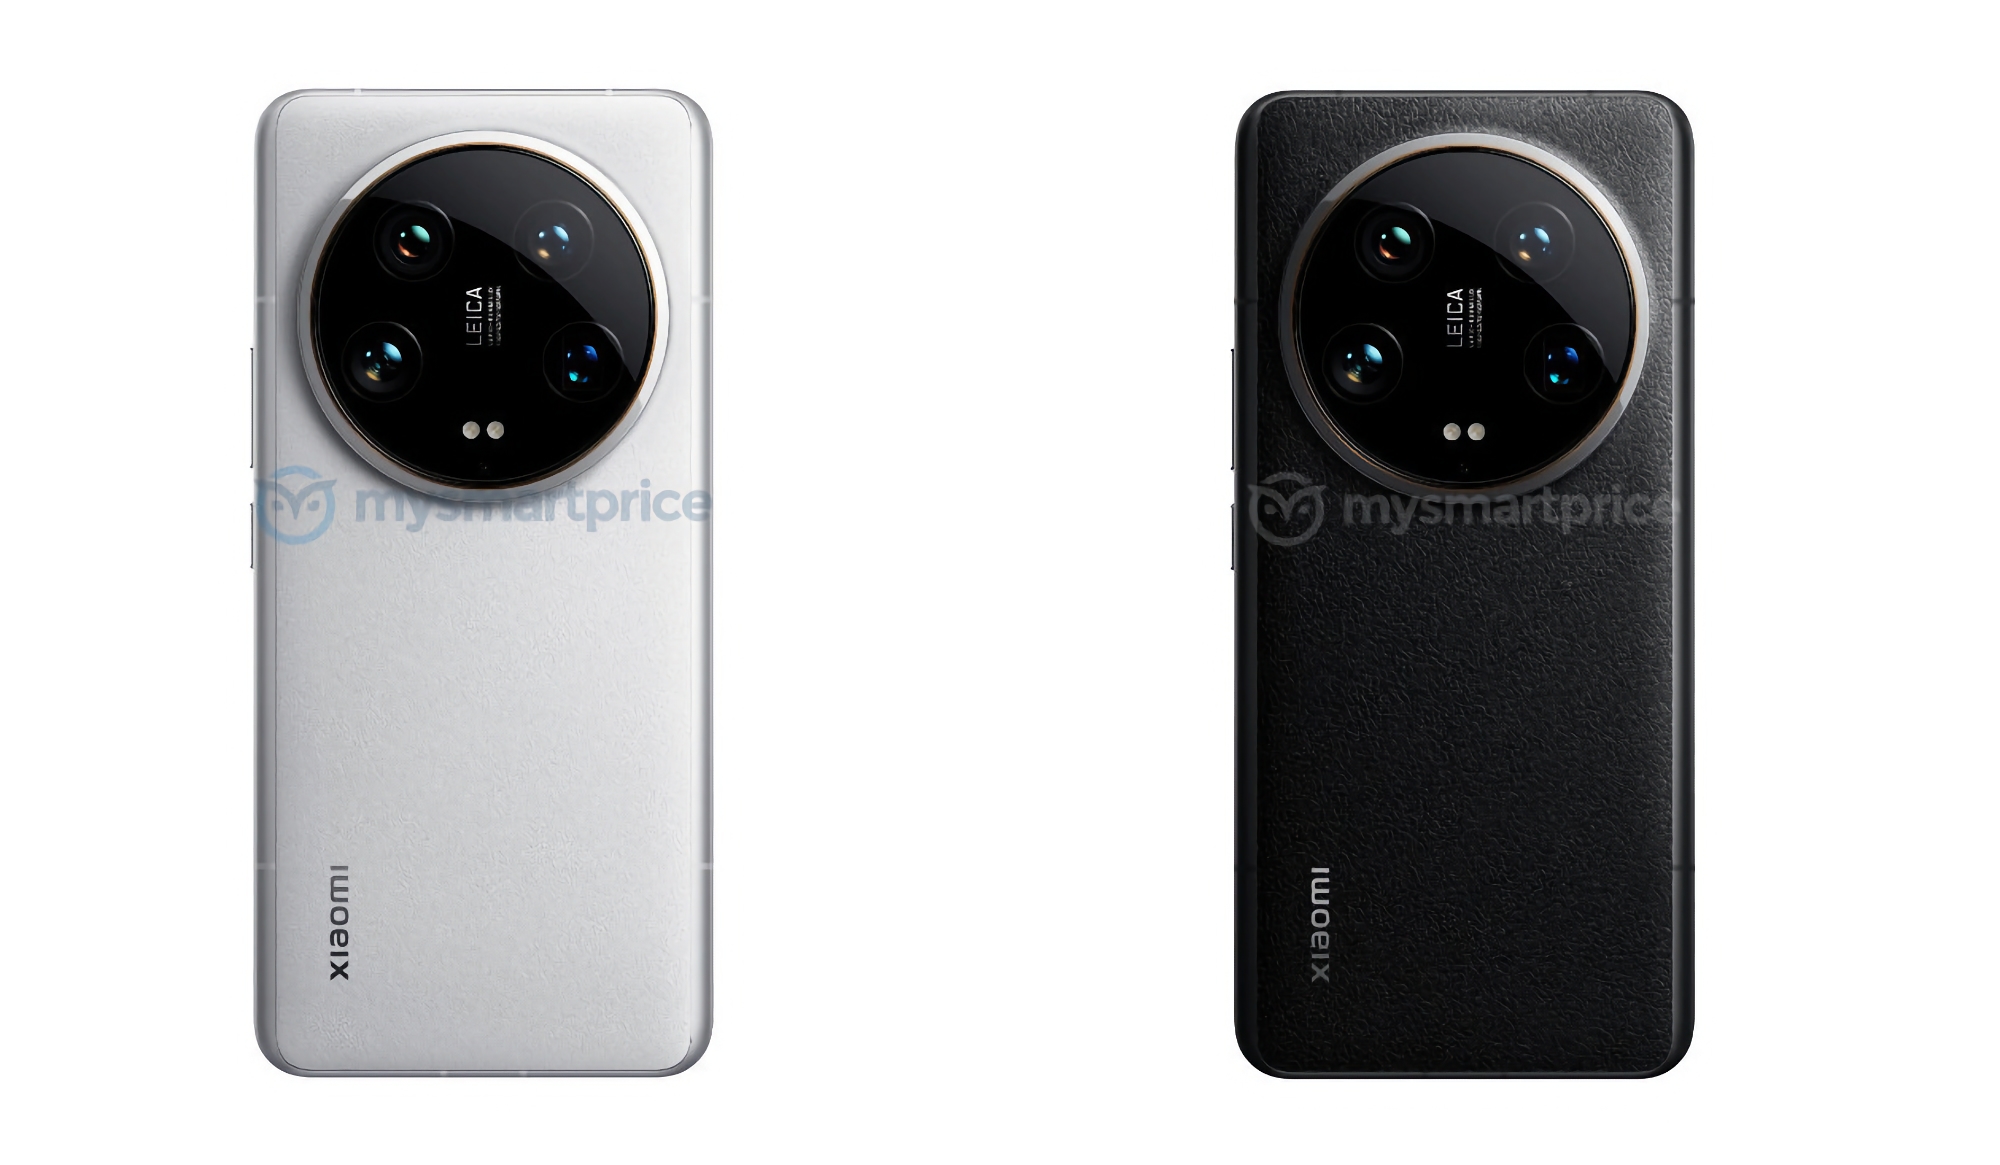 Minimale veranderingen: de Xiaomi 14 Ultra met een gigantische Leica-camera en een leren achterkant is opgedoken in renders